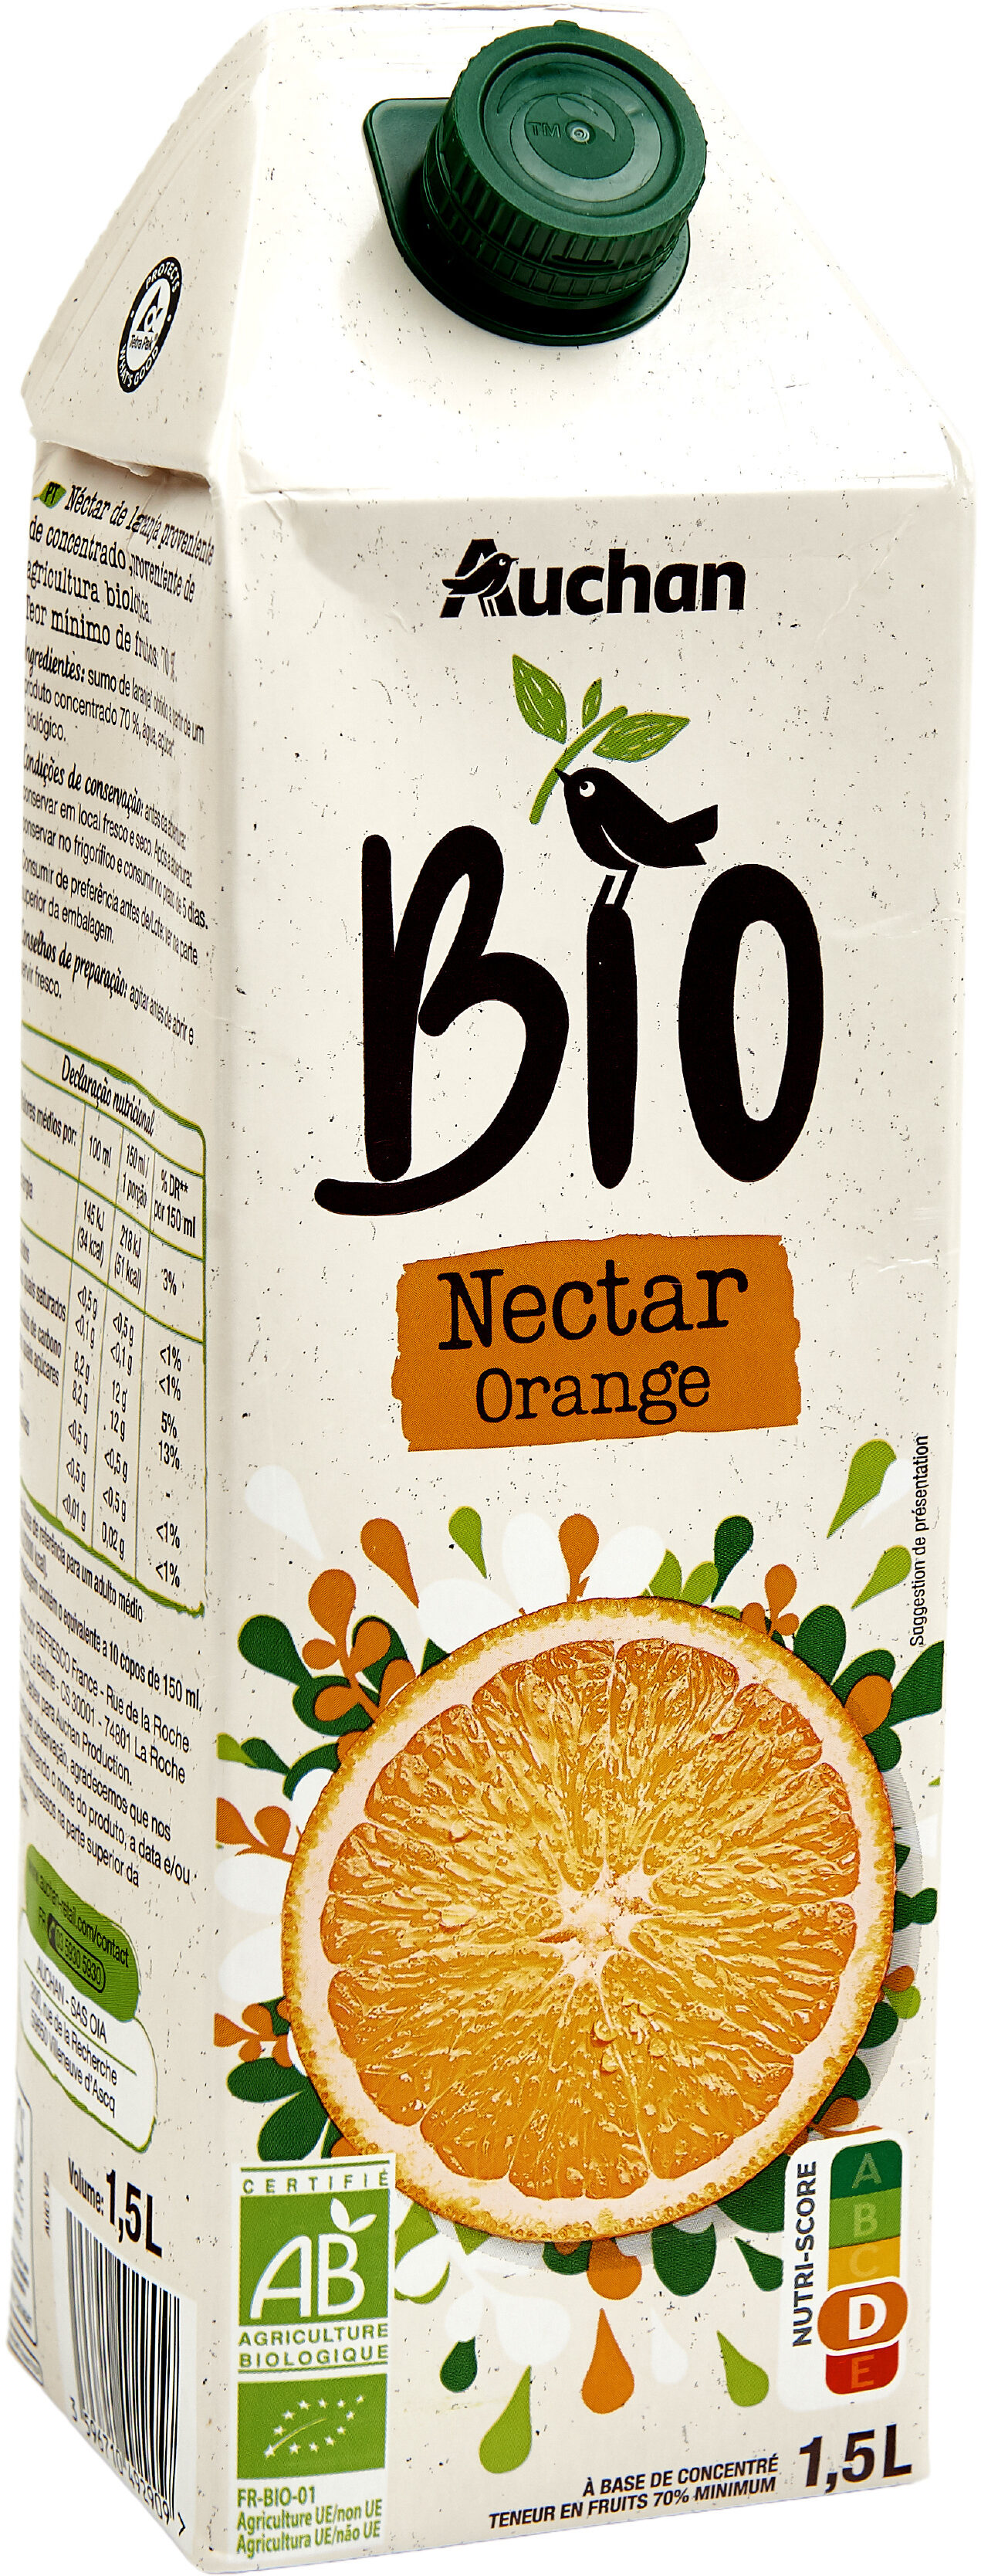 Nectar d'orange biologique. A base de concentré, Teneur en fruits : 70% minimum. - Produit